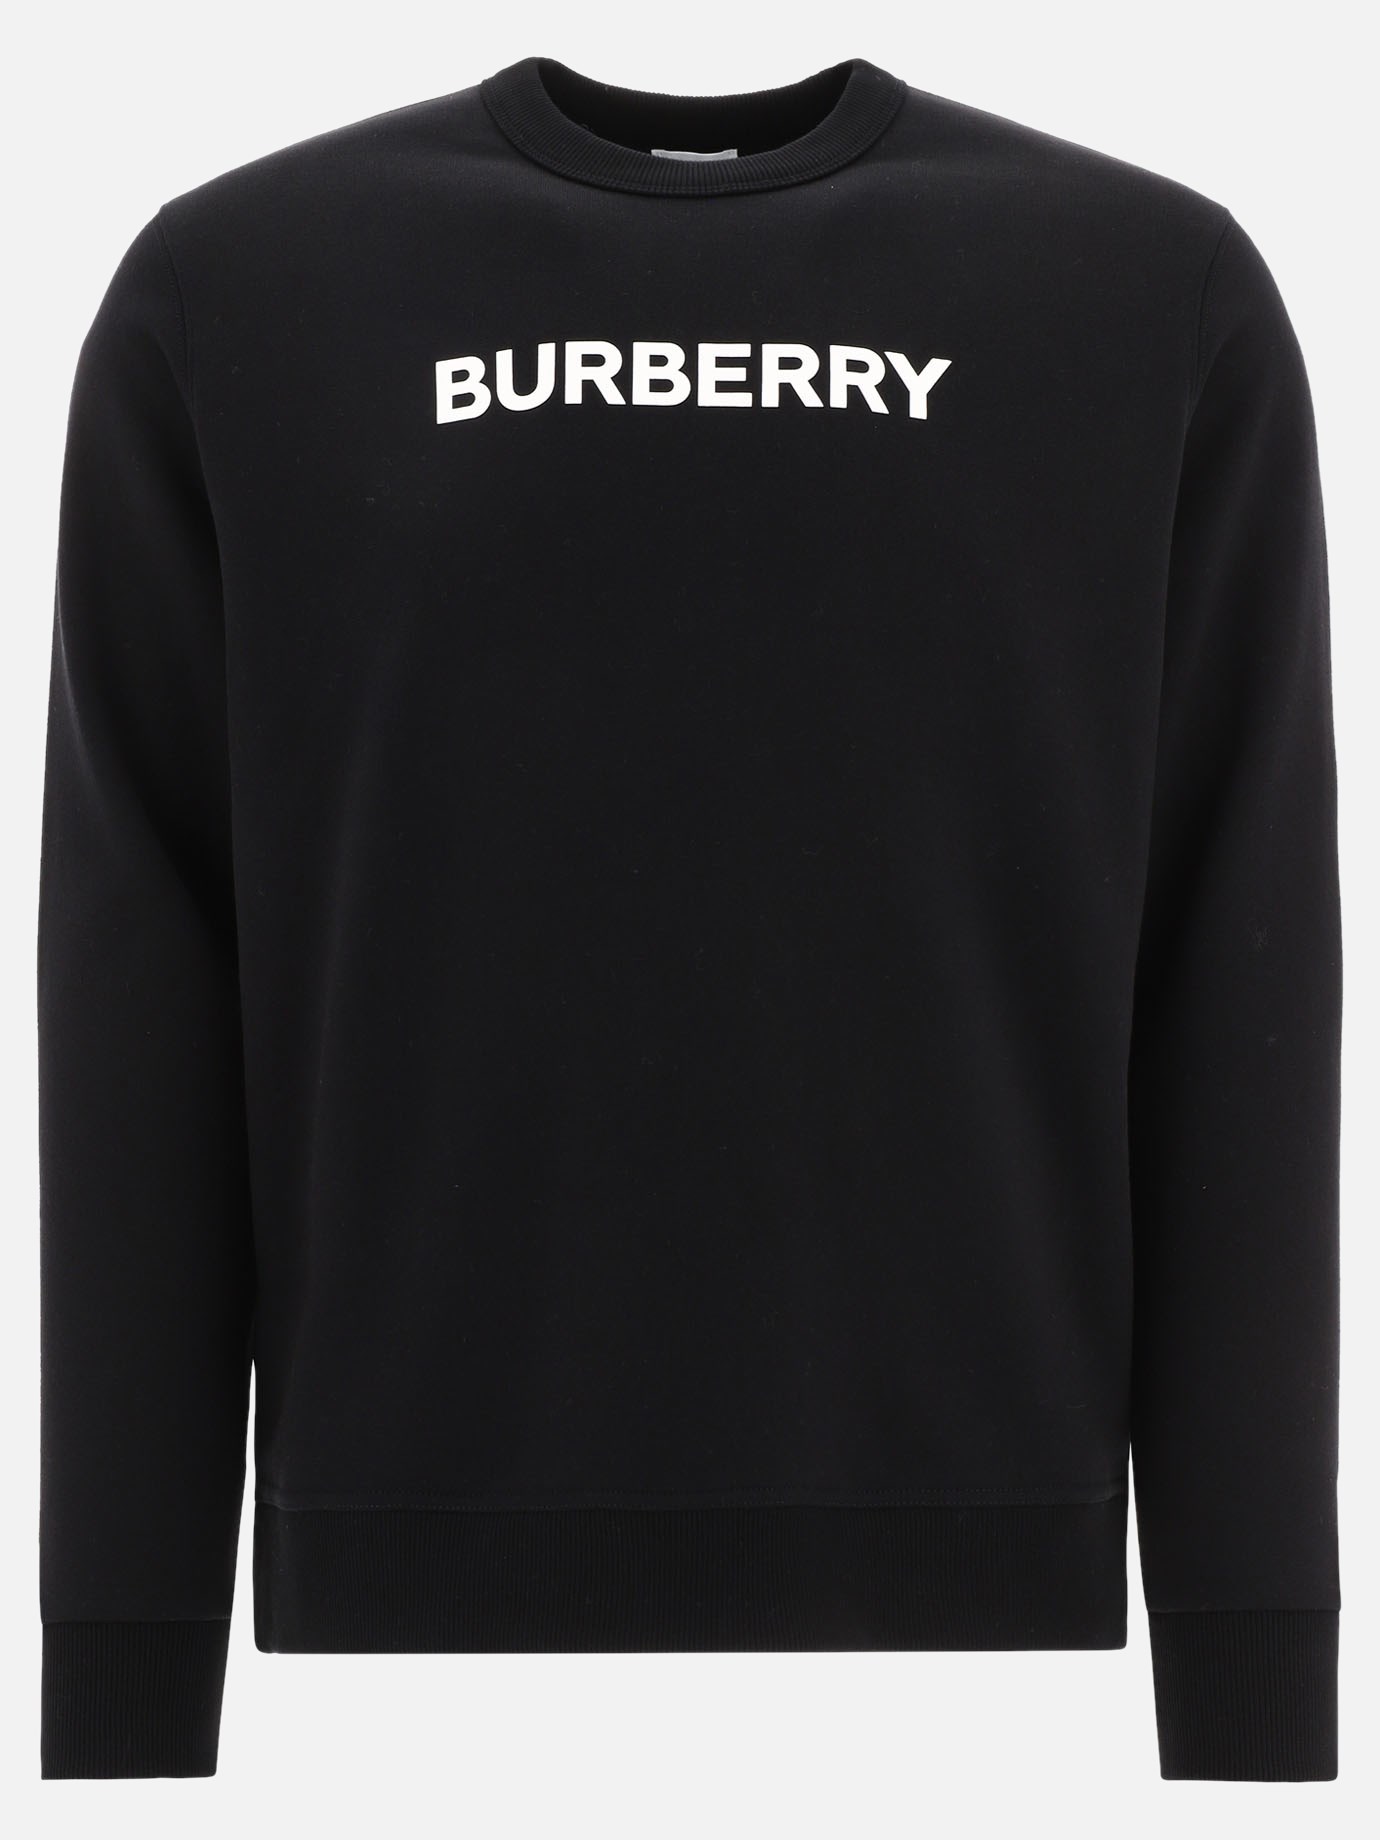  Burlow  sweatshirtby Burberry - 2